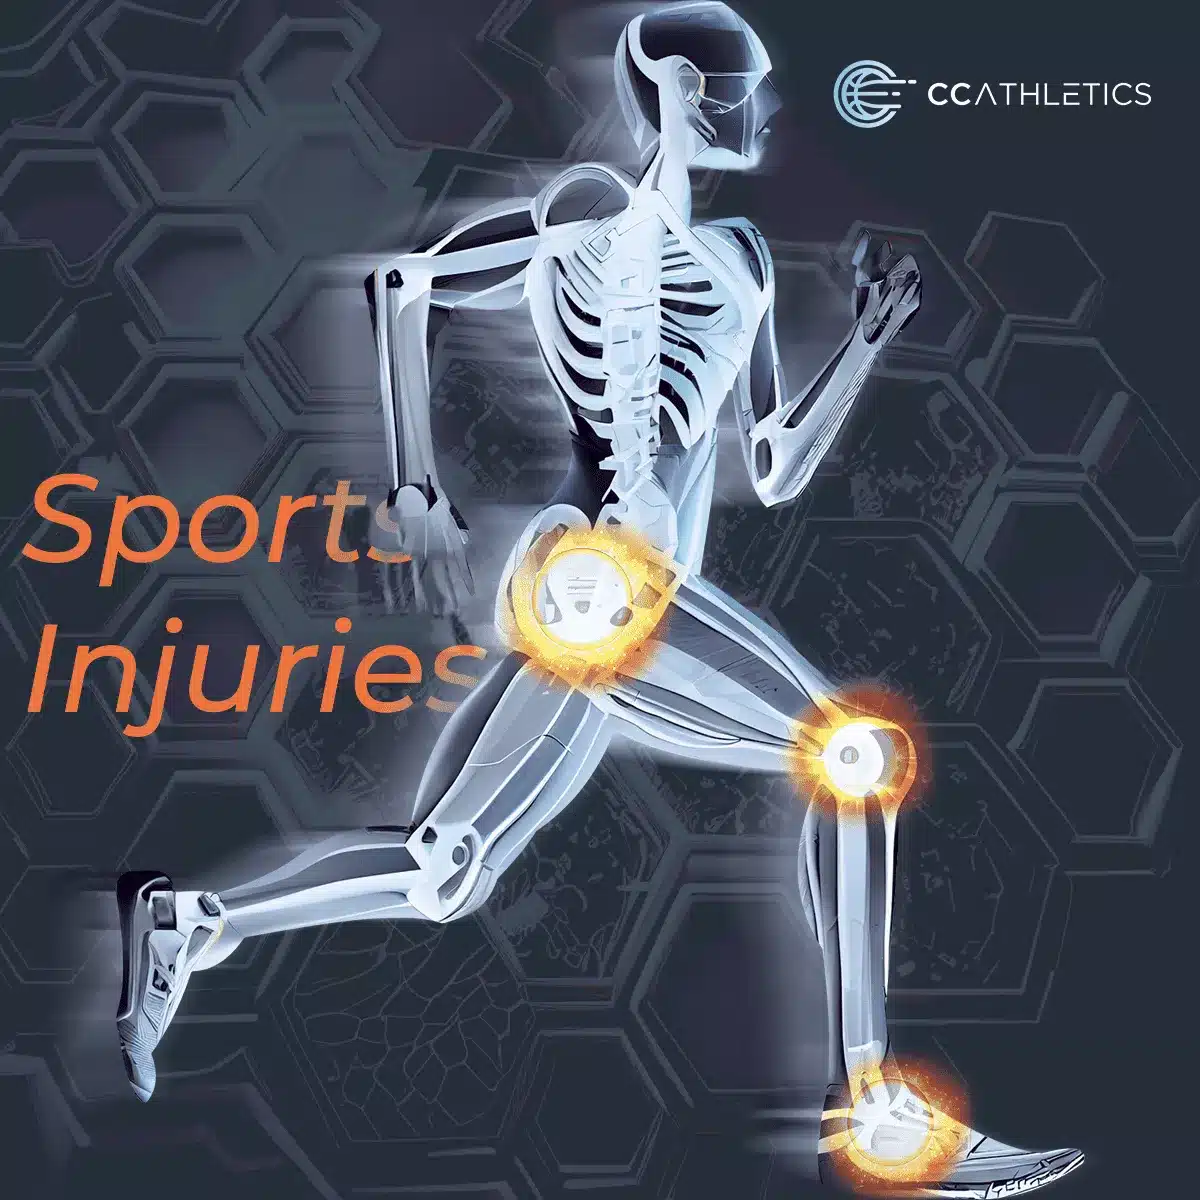 Sports-injuries